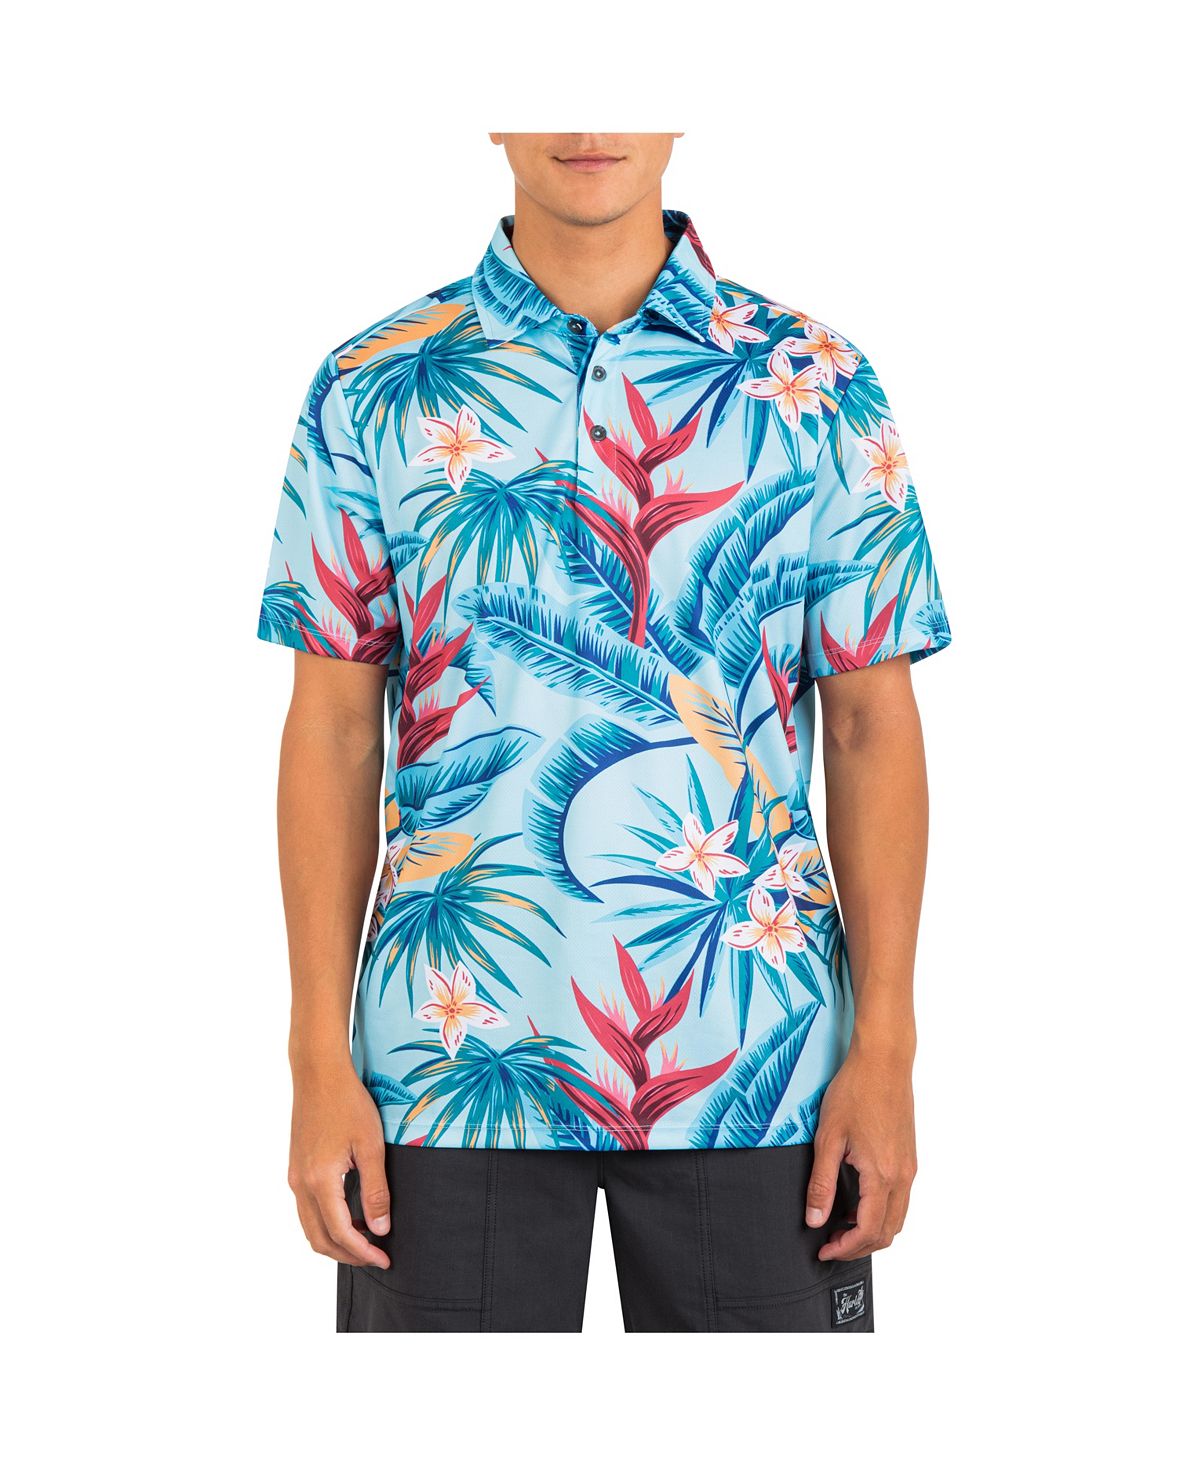 Мужская рубашка-поло с короткими рукавами в сетку H2O-Dri Ace Fiesta Hurley